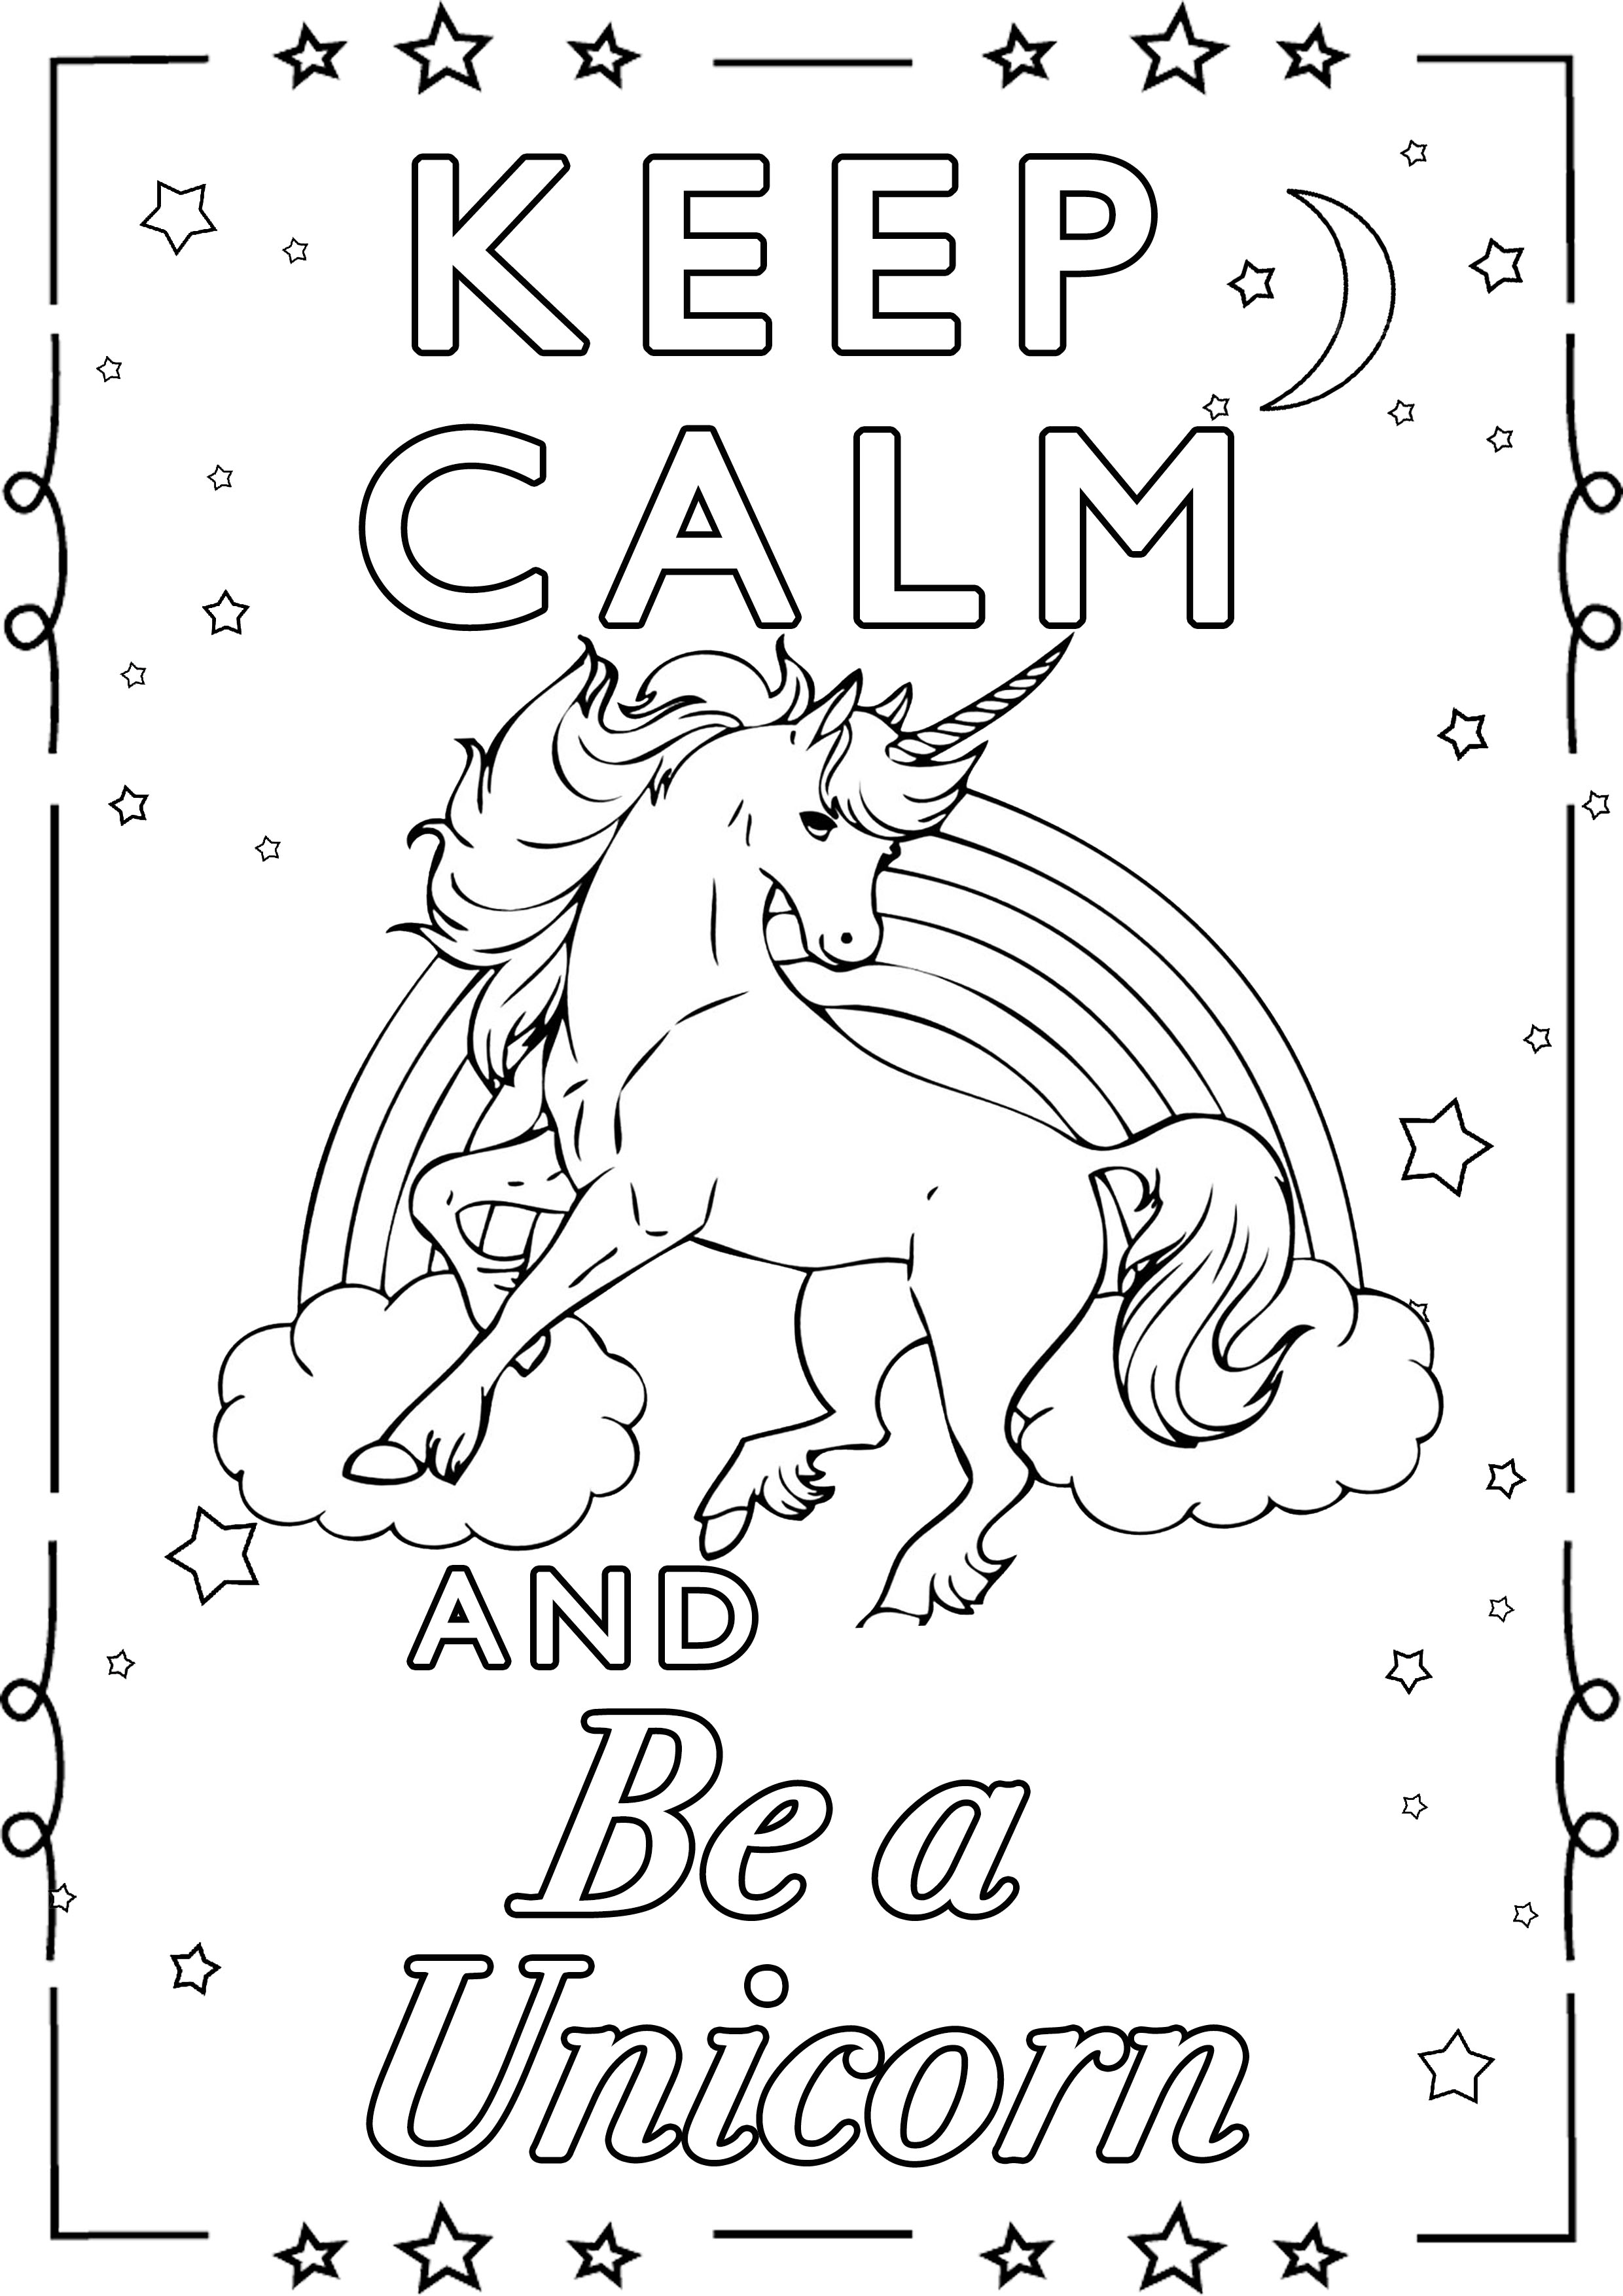 Keep Calm and Be a Unicorn (2) : Esistono! È vero!